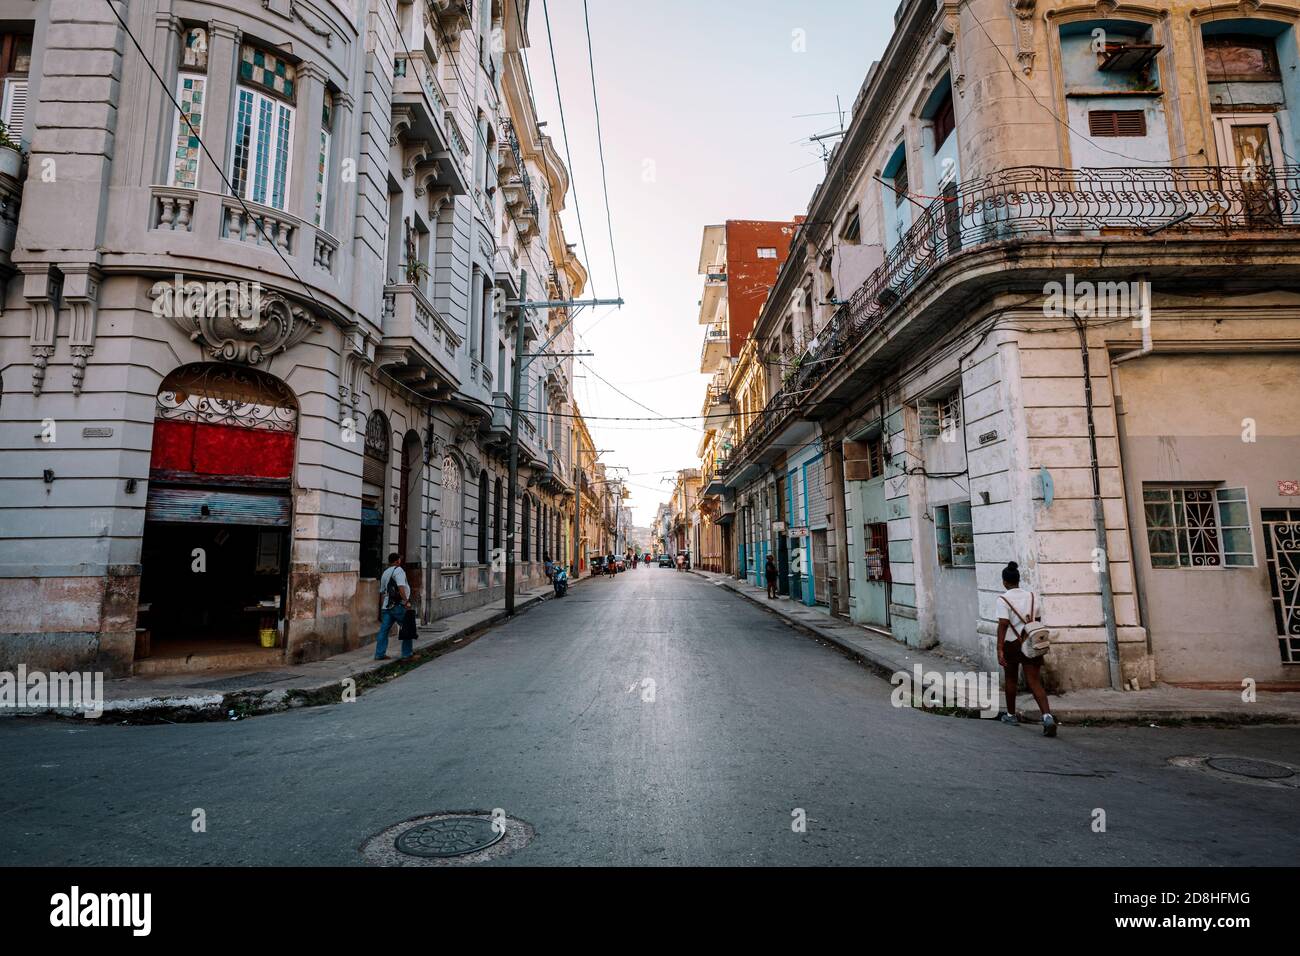 Vista de la calle auténtica con edificios coloniales antiguos y gente local en la vida cotidiana. Parte antigua de la Ciudad de la Habana. Foto de stock